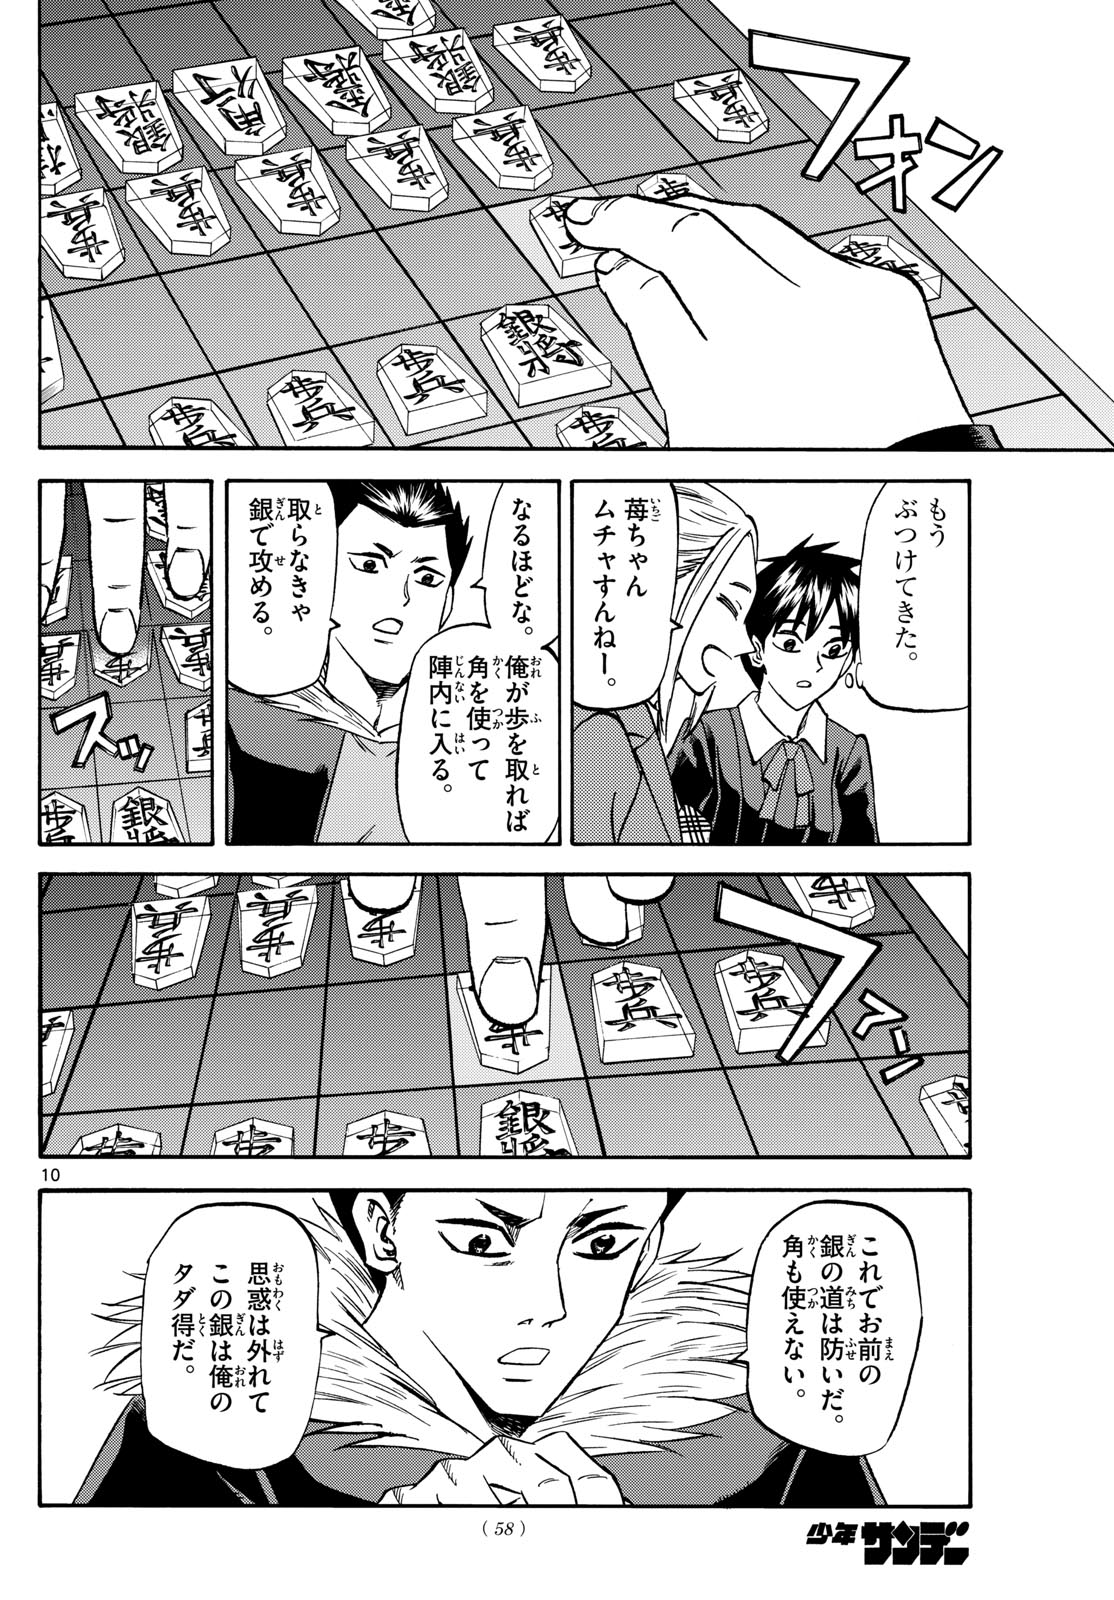 Tatsu to Ichigo - Chapter 183 - Page 10